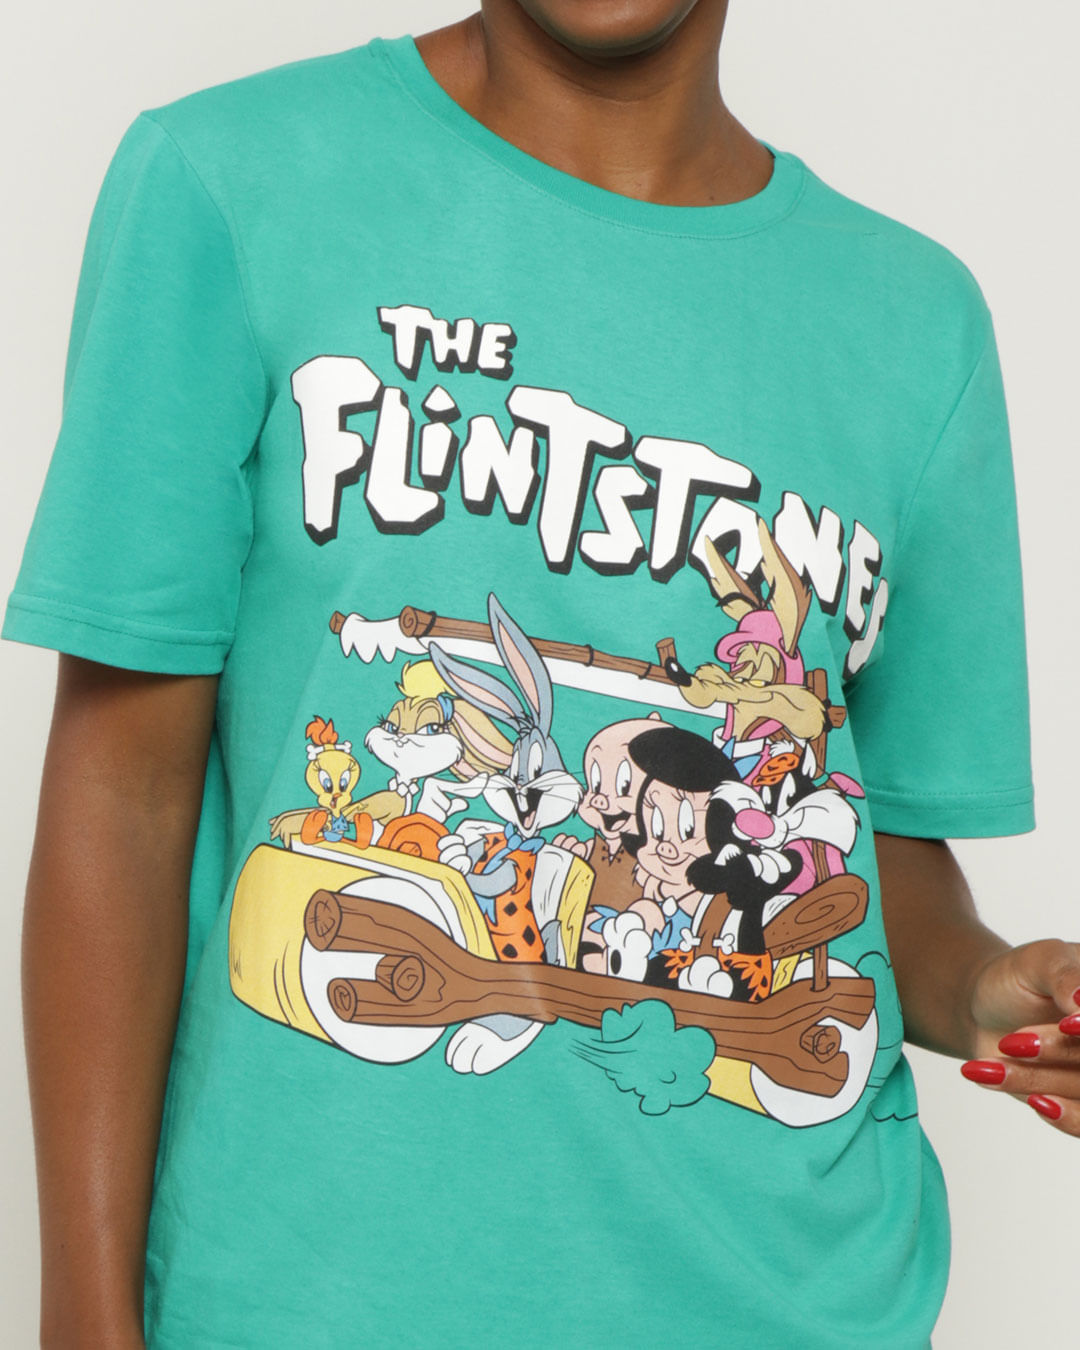 Camiseta-Feminina-Oversized-Flintstones-Warner-Verde